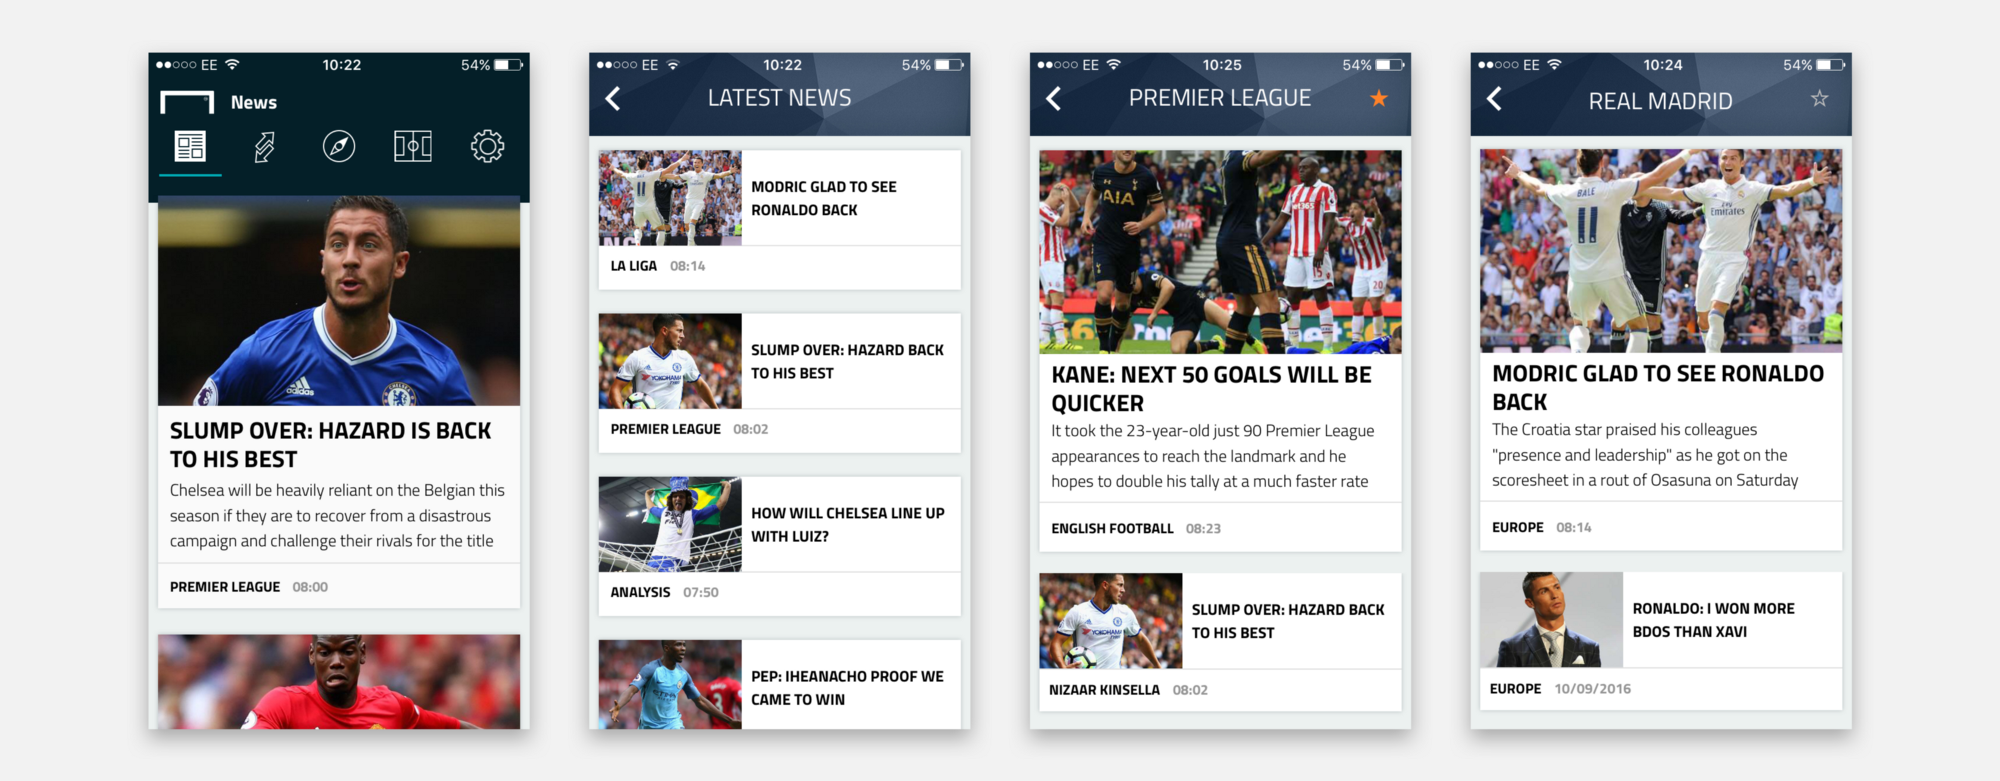 Скриншоты нового приложения Goal.com, в котором представлен карточный интерфейс